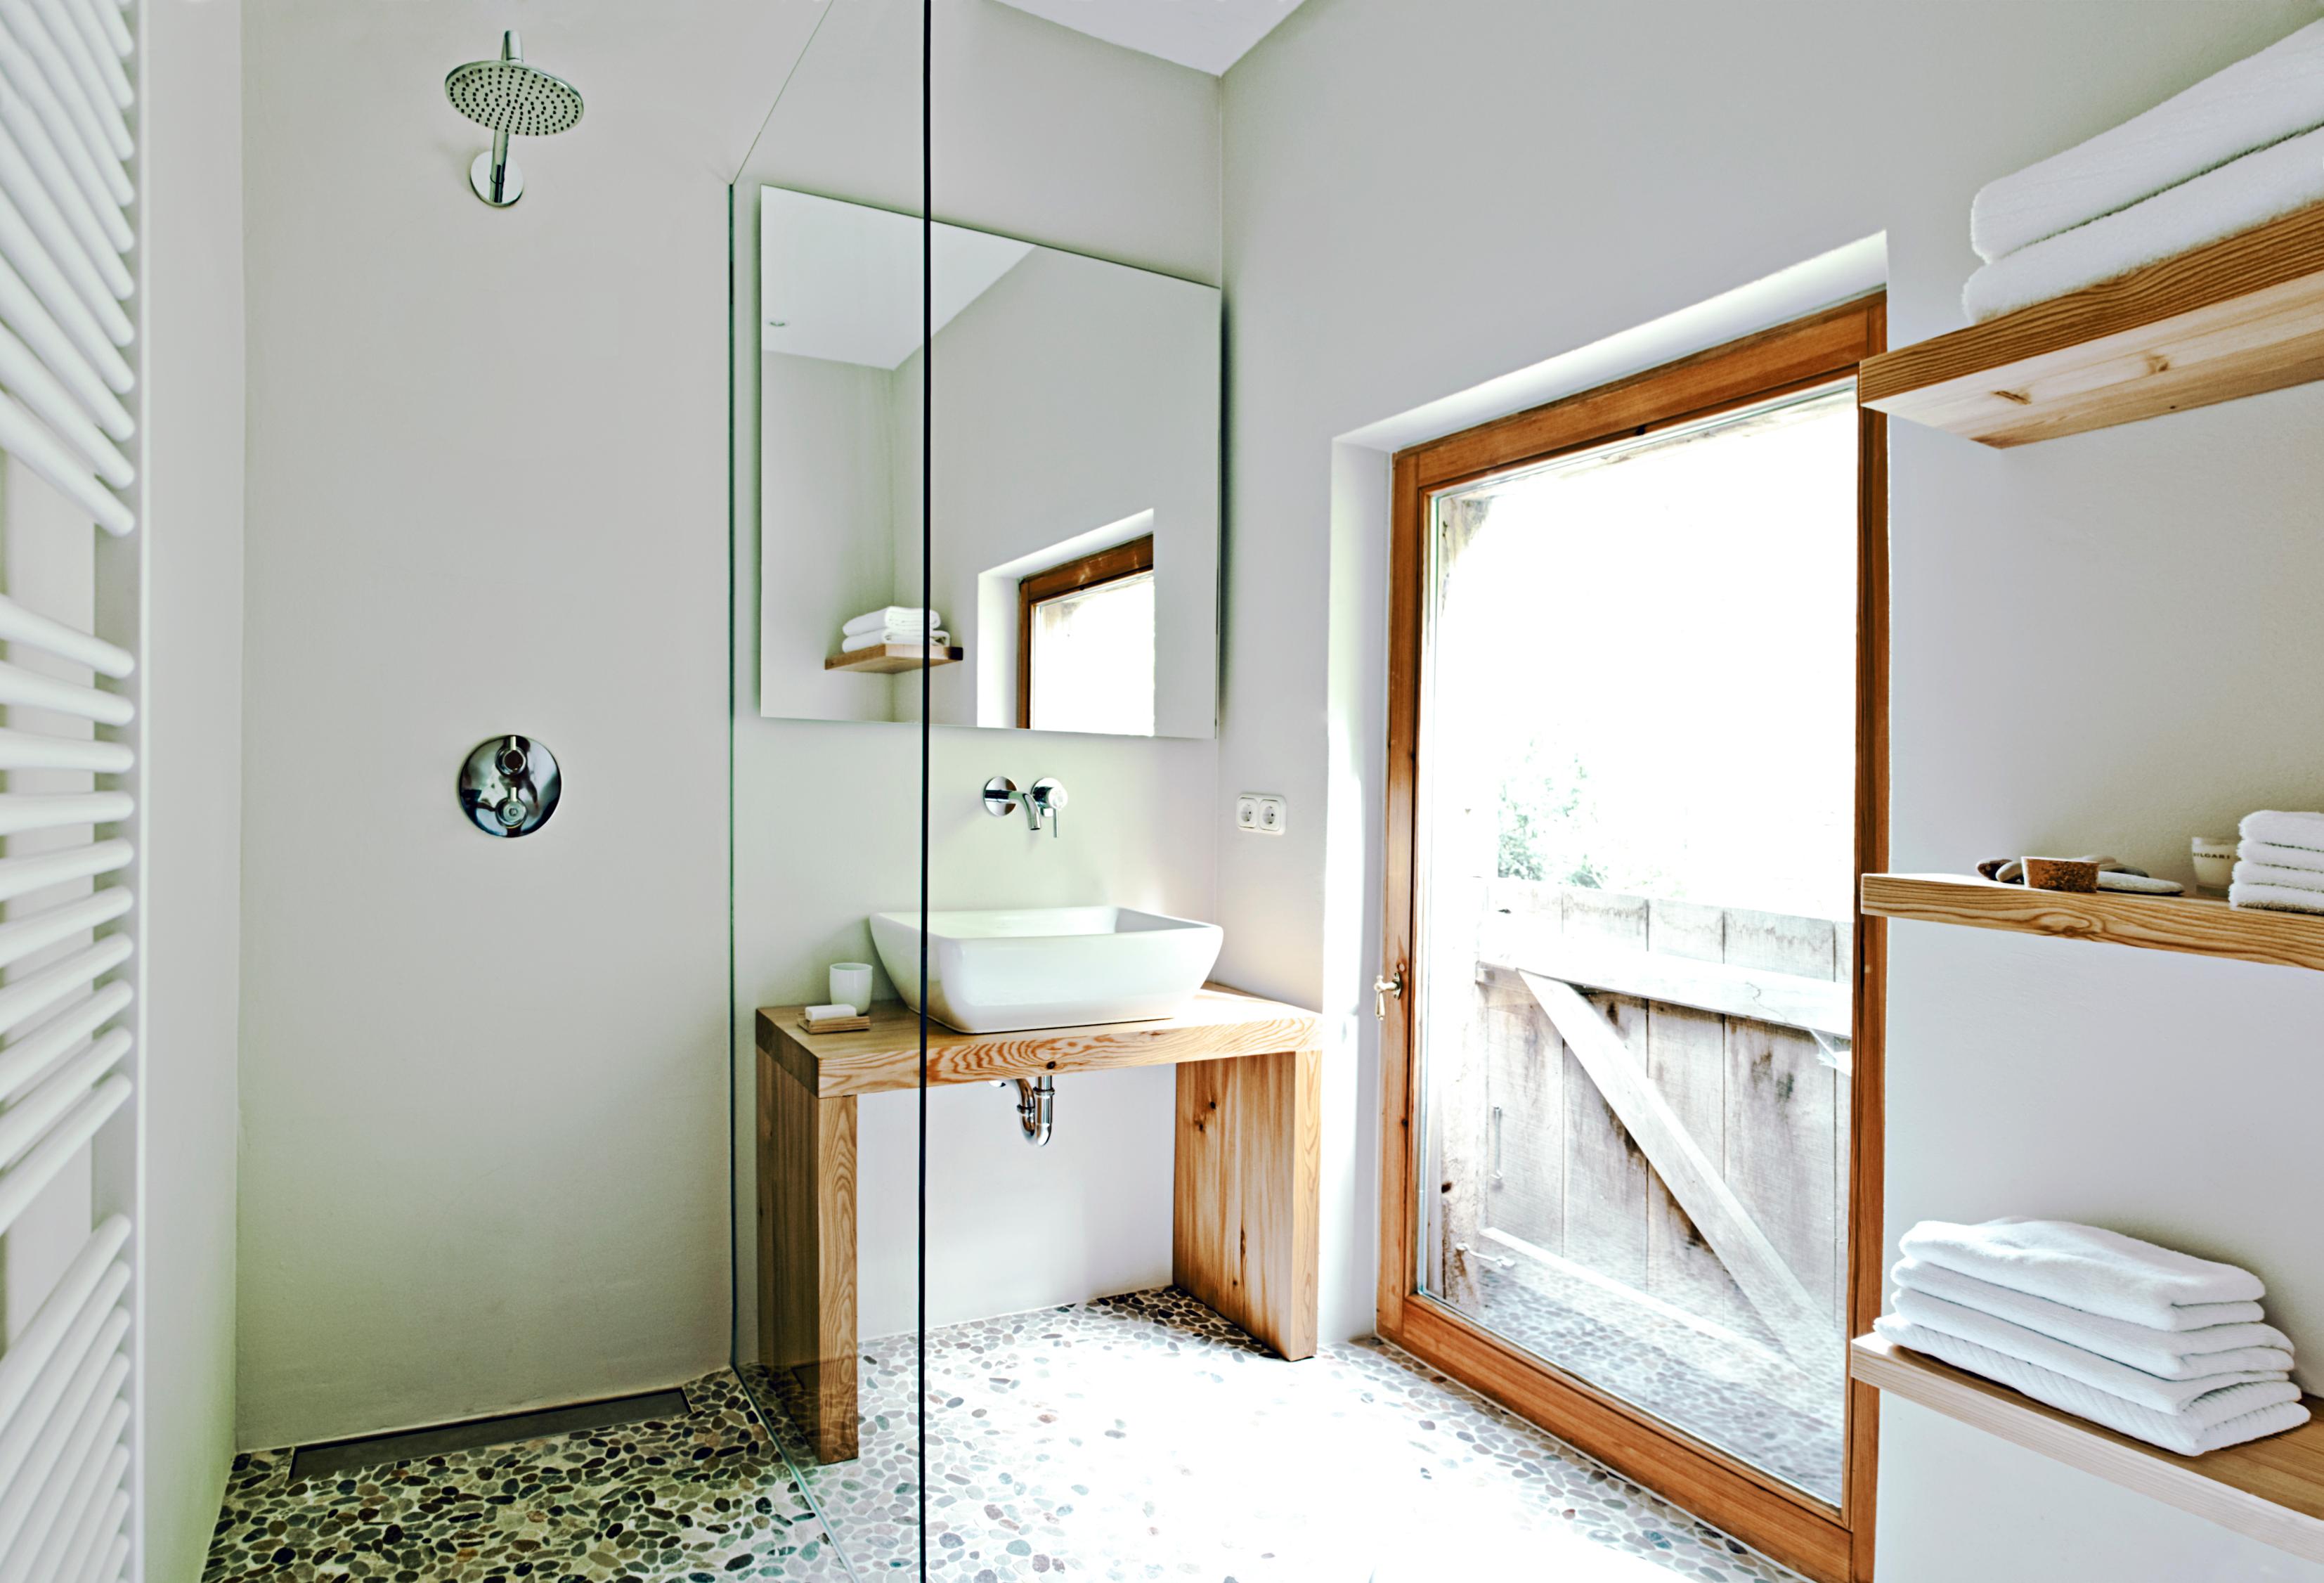 Badezimmer im Landhausstil #mosaikfliesen #badezimmerspiegel #waschschüssel #modernesbadezimmer #badidee ©Michael Pfeiffer Fotografie